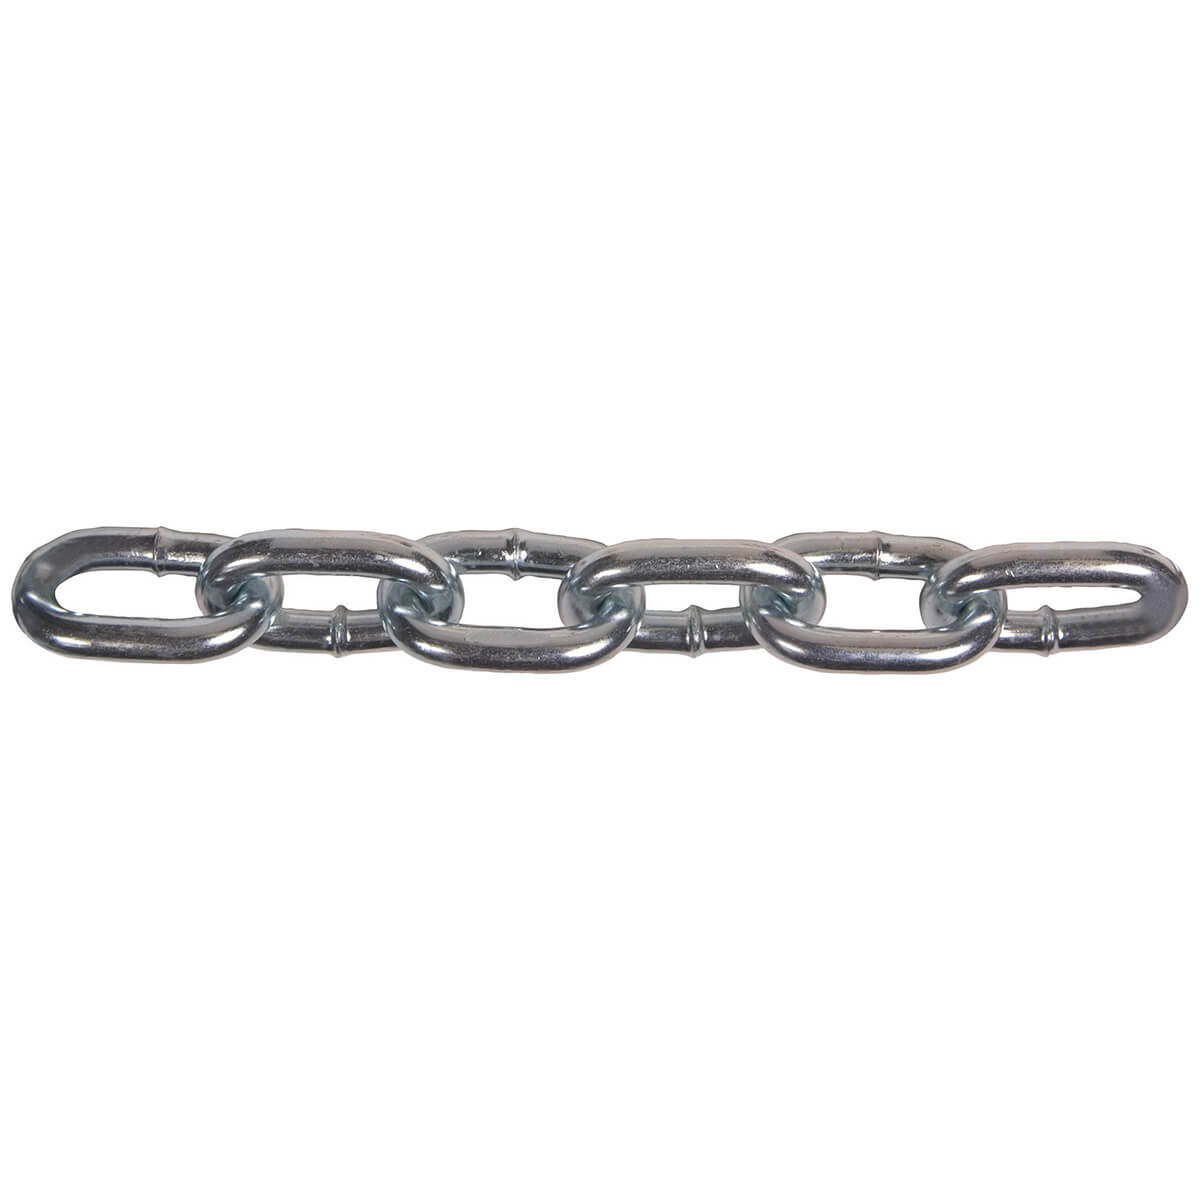 Grade 40 High Tensil Chain - Zinc Plated